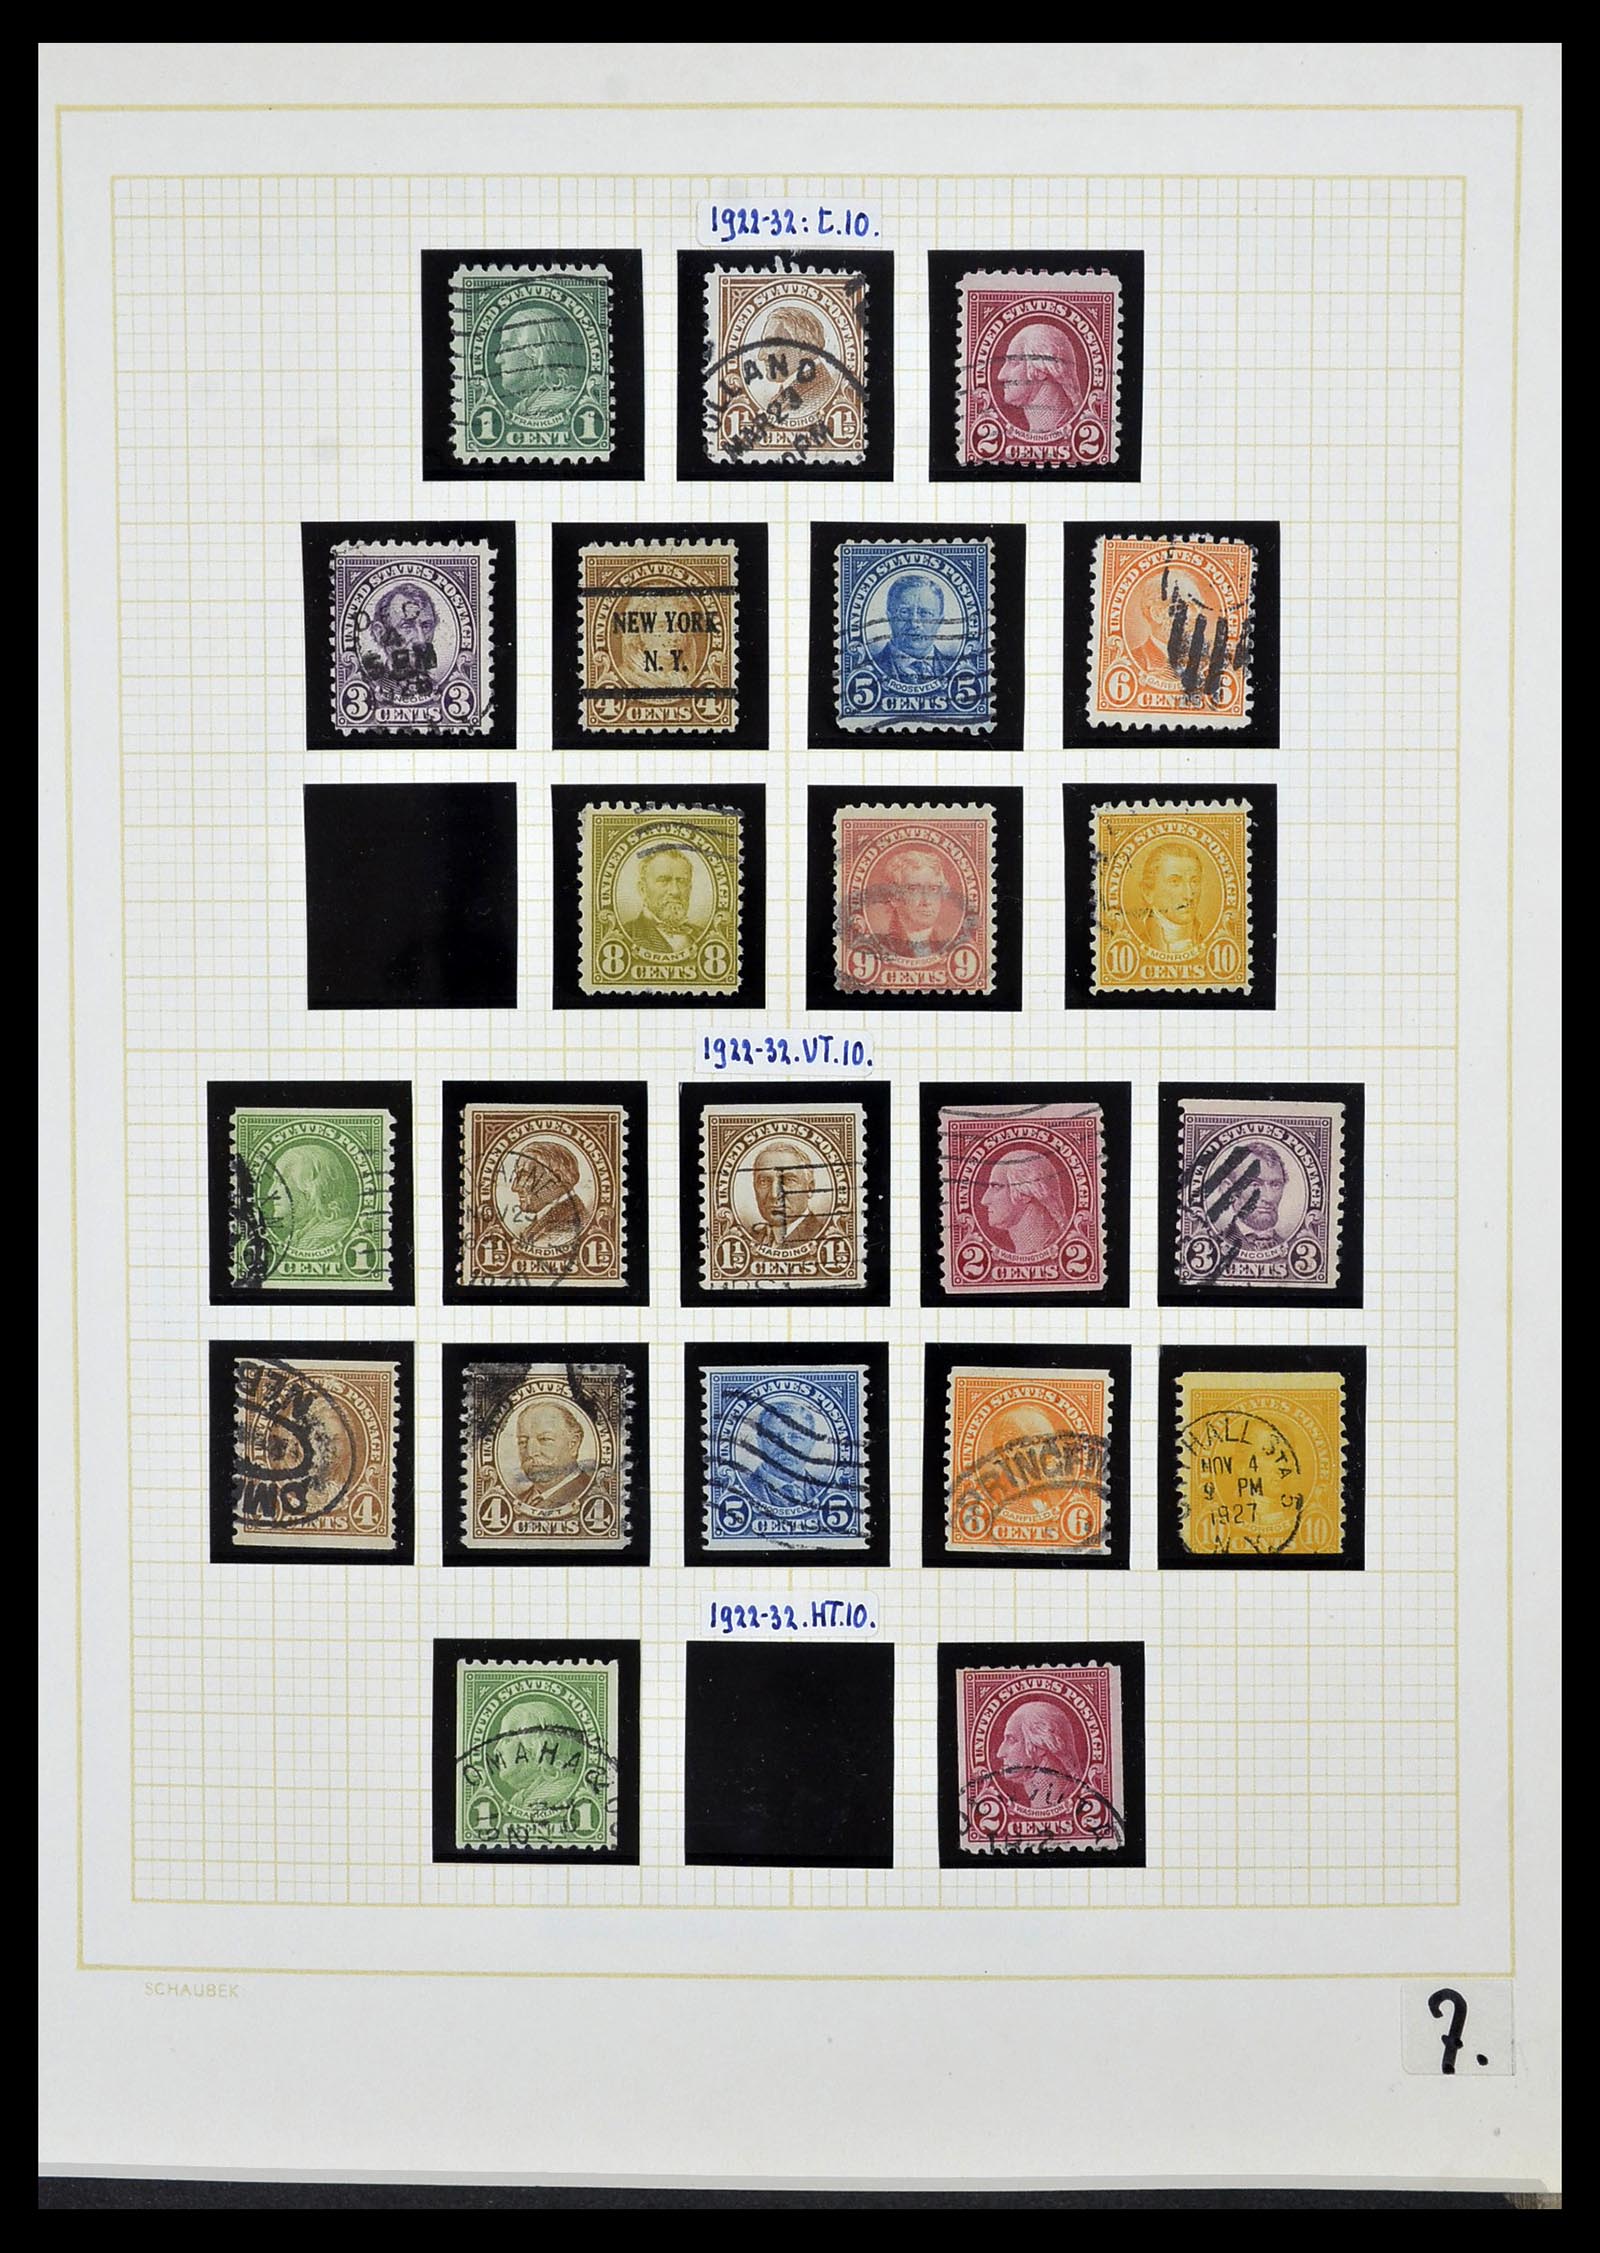 34525 024 - Stamp Collection 34525 USA 1851-1980.